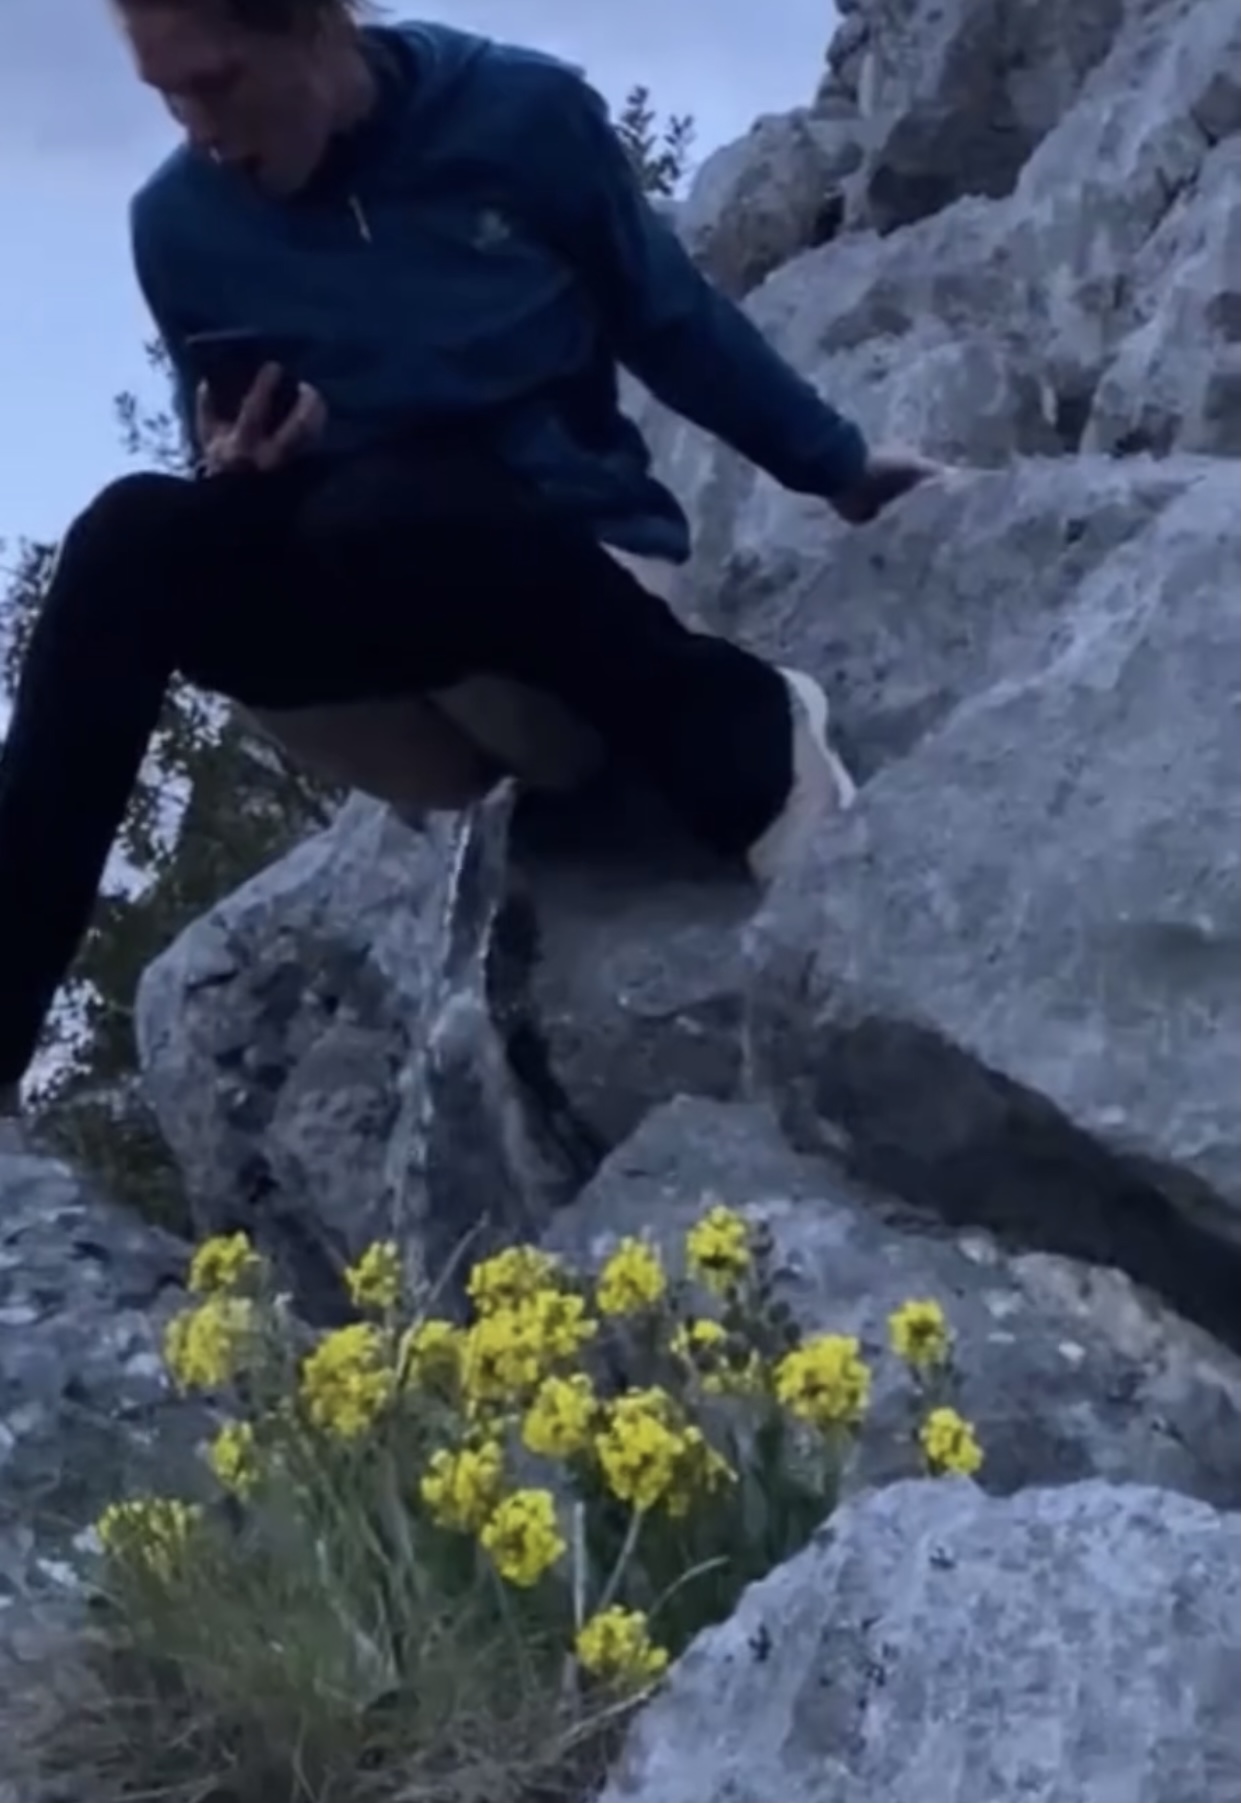 Woman pees suspended between rocks